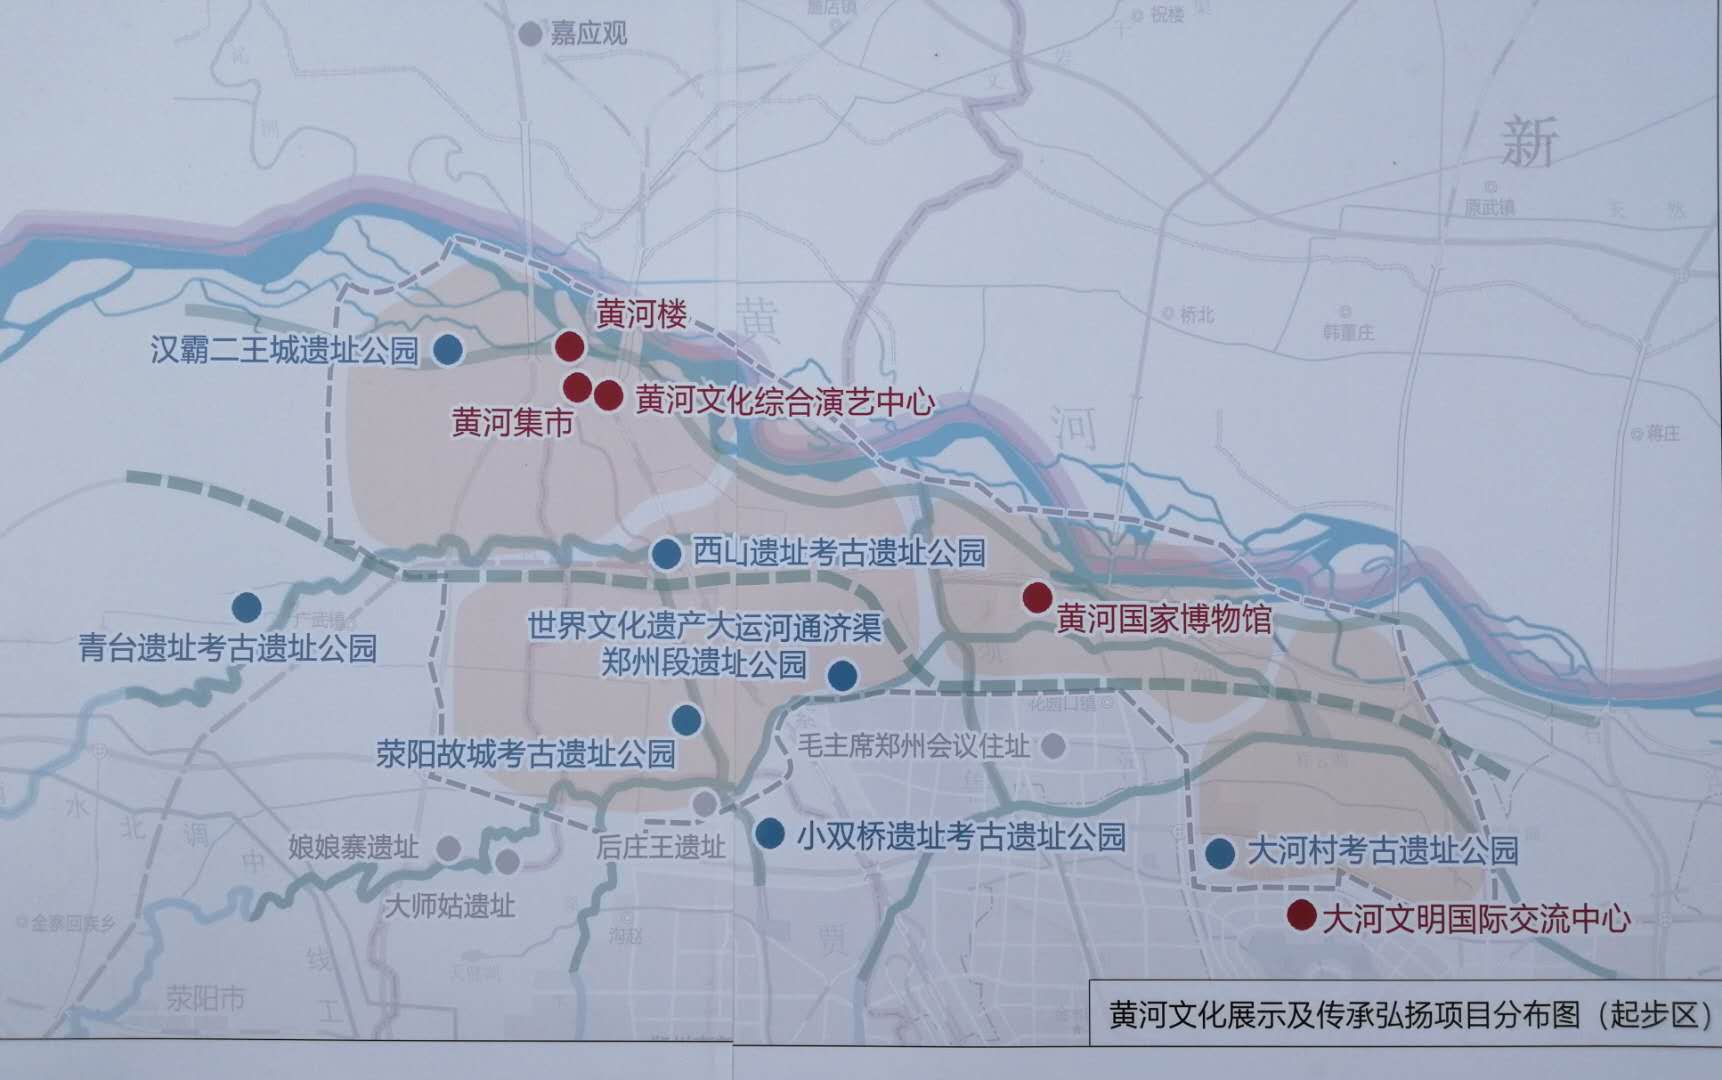 建设黄河流域生态保护和高质量发展先行区 习近平在宁夏考察时强调 在中国式现代化建